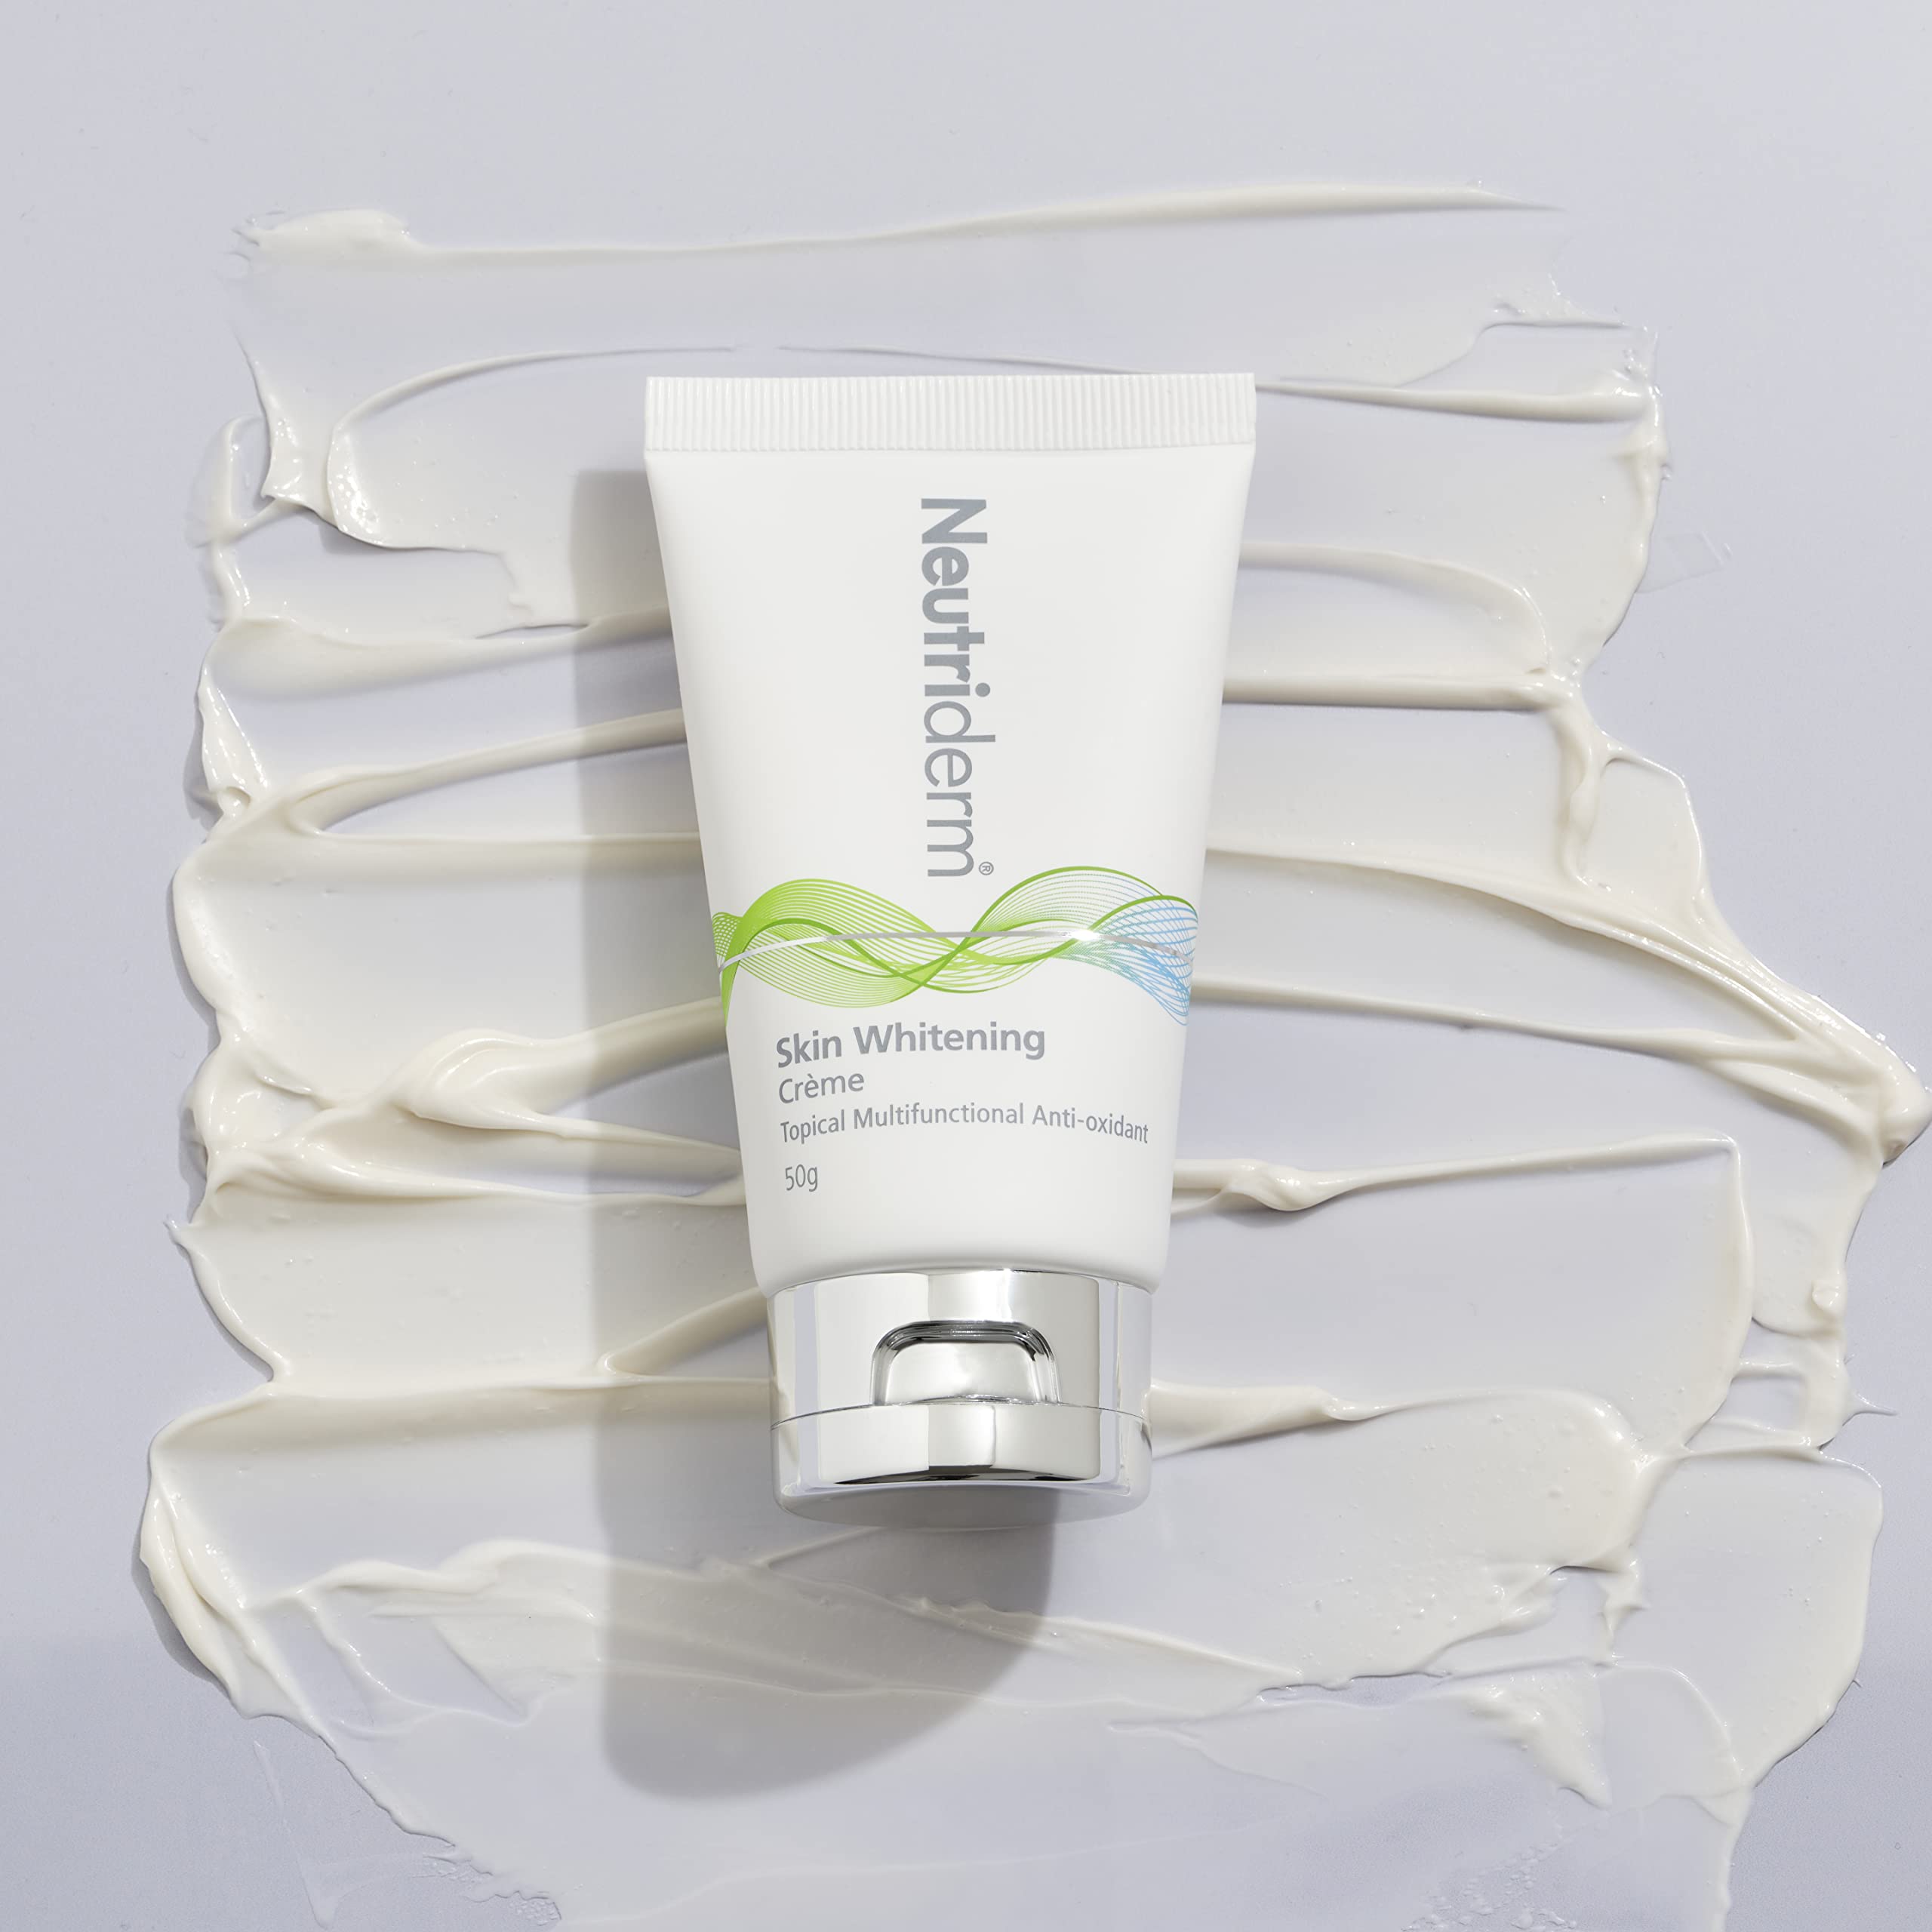 NEUTRIDERM Skin Illuminating Creme - Multifunctional Anti-Oxidant + Tone Correcting Creme, 50g